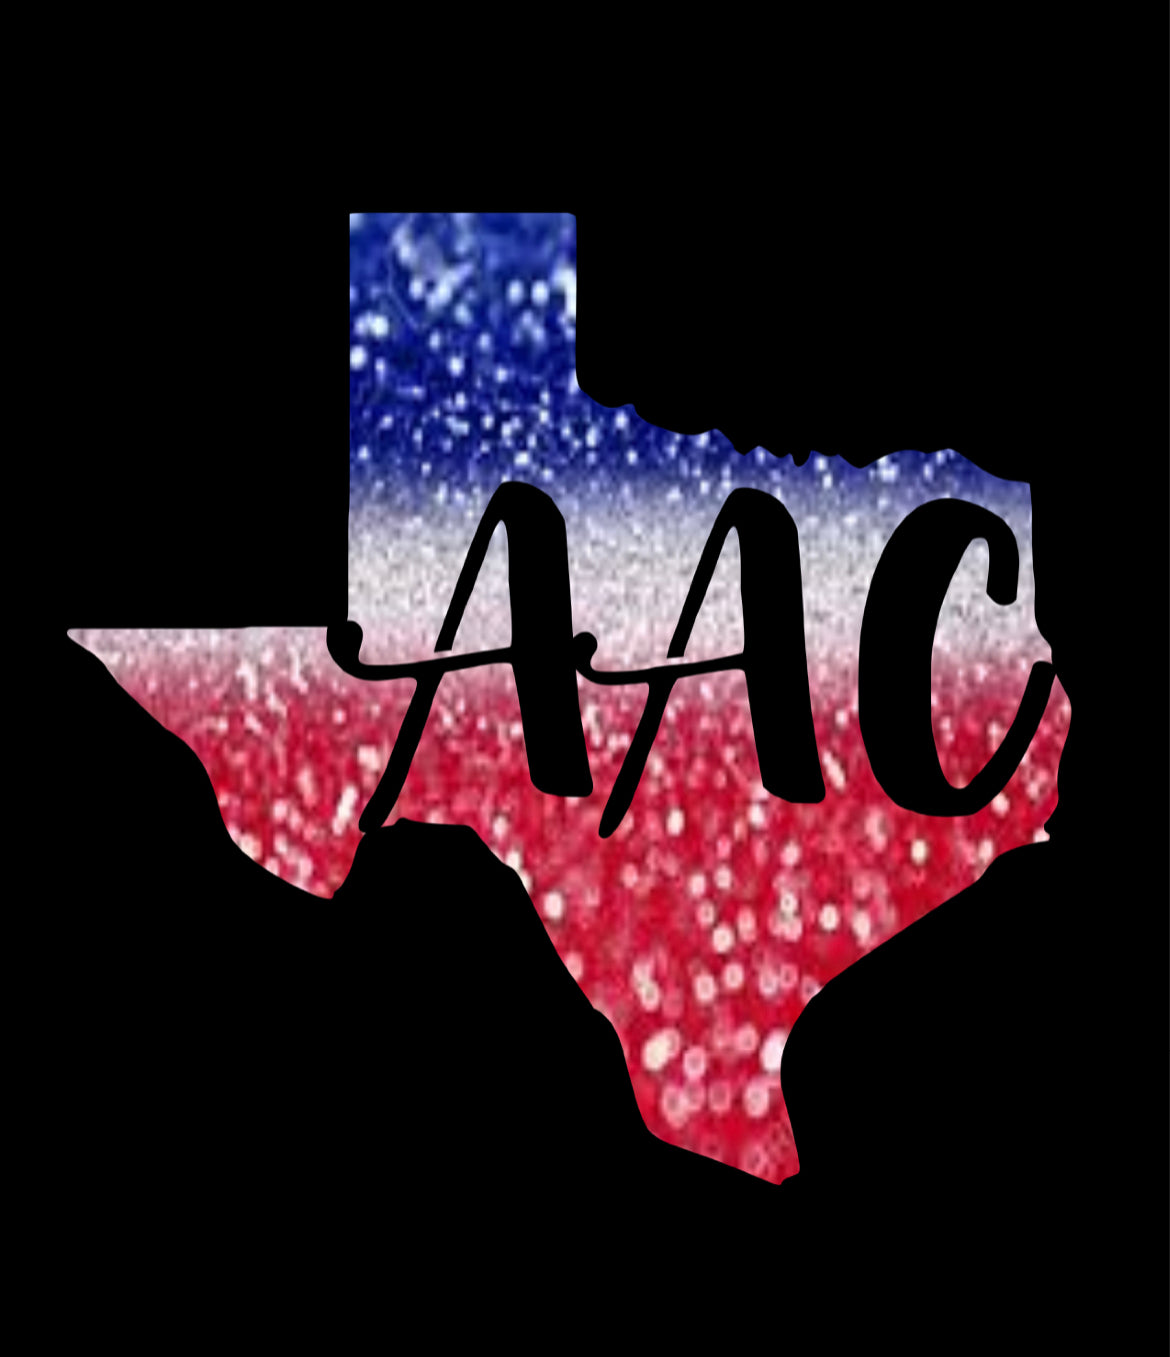 AAC Logo